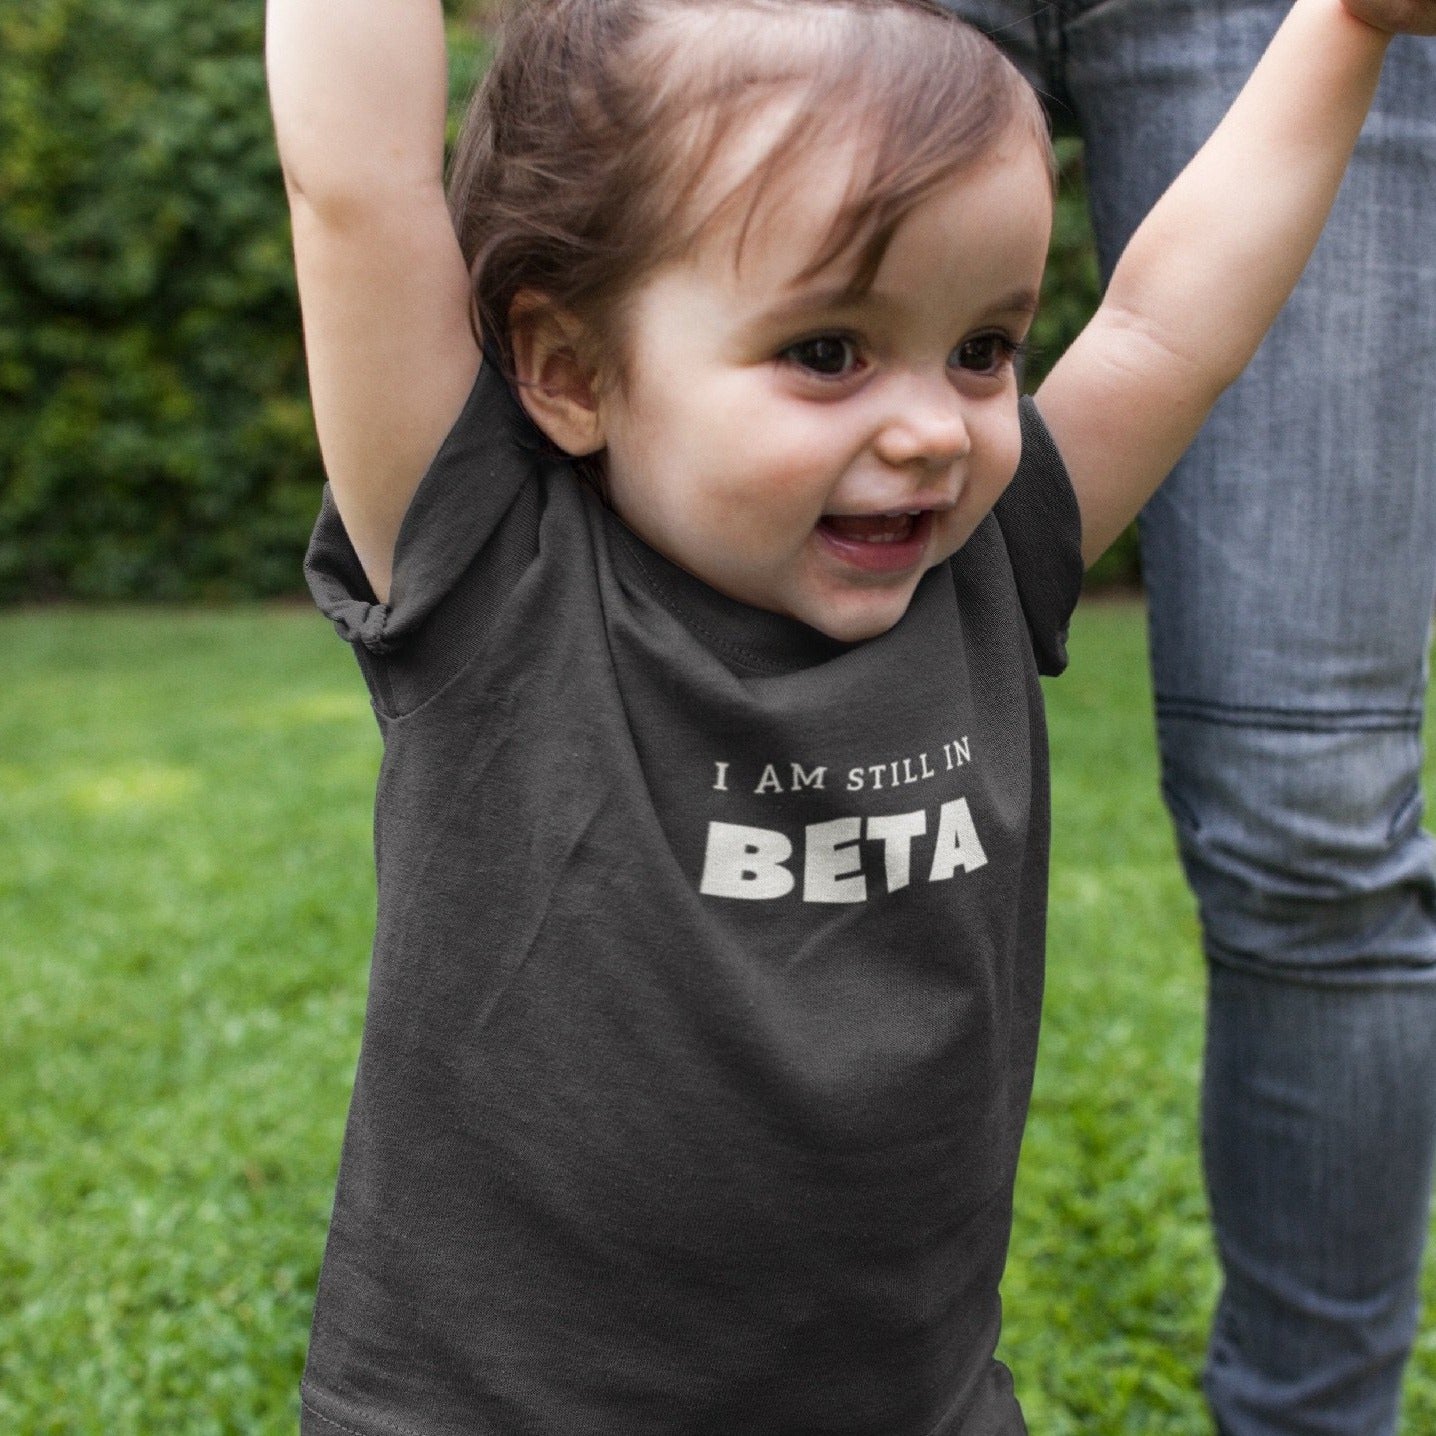 I am still in beta baby bodysuit - Threadhub store